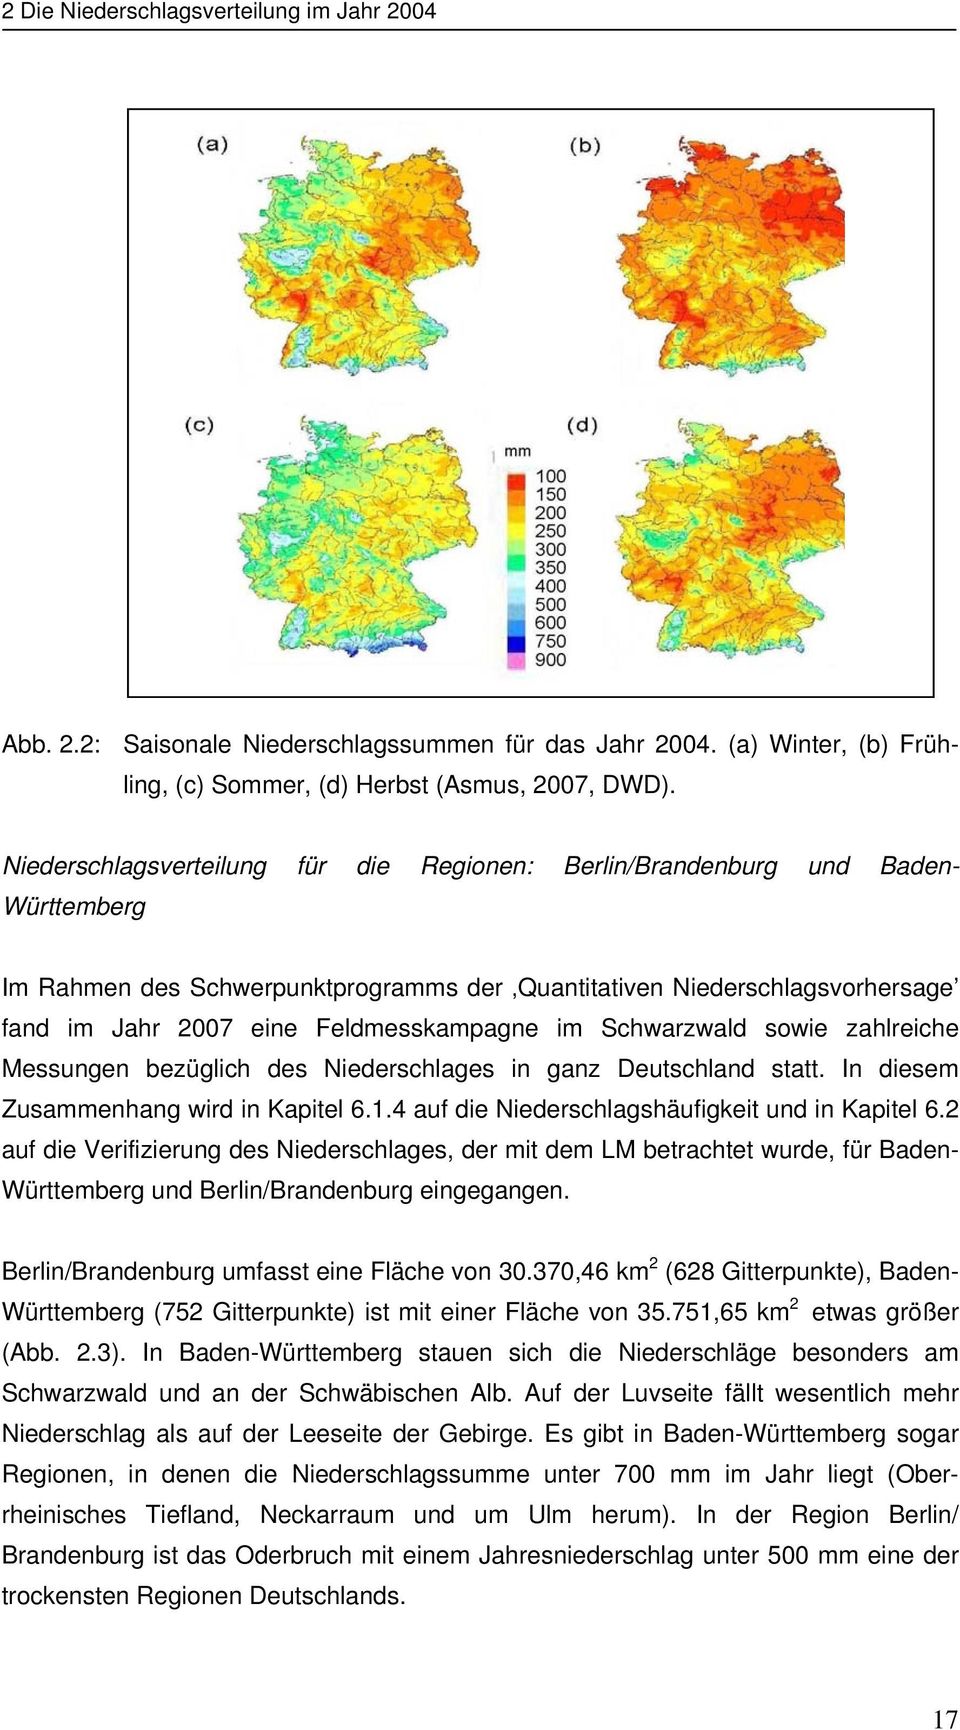 Feldmesskampagne im Schwarzwald sowie zahlreiche Messungen bezüglich des Niederschlages in ganz Deutschland statt. In diesem Zusammenhang wird in Kapitel 6.1.